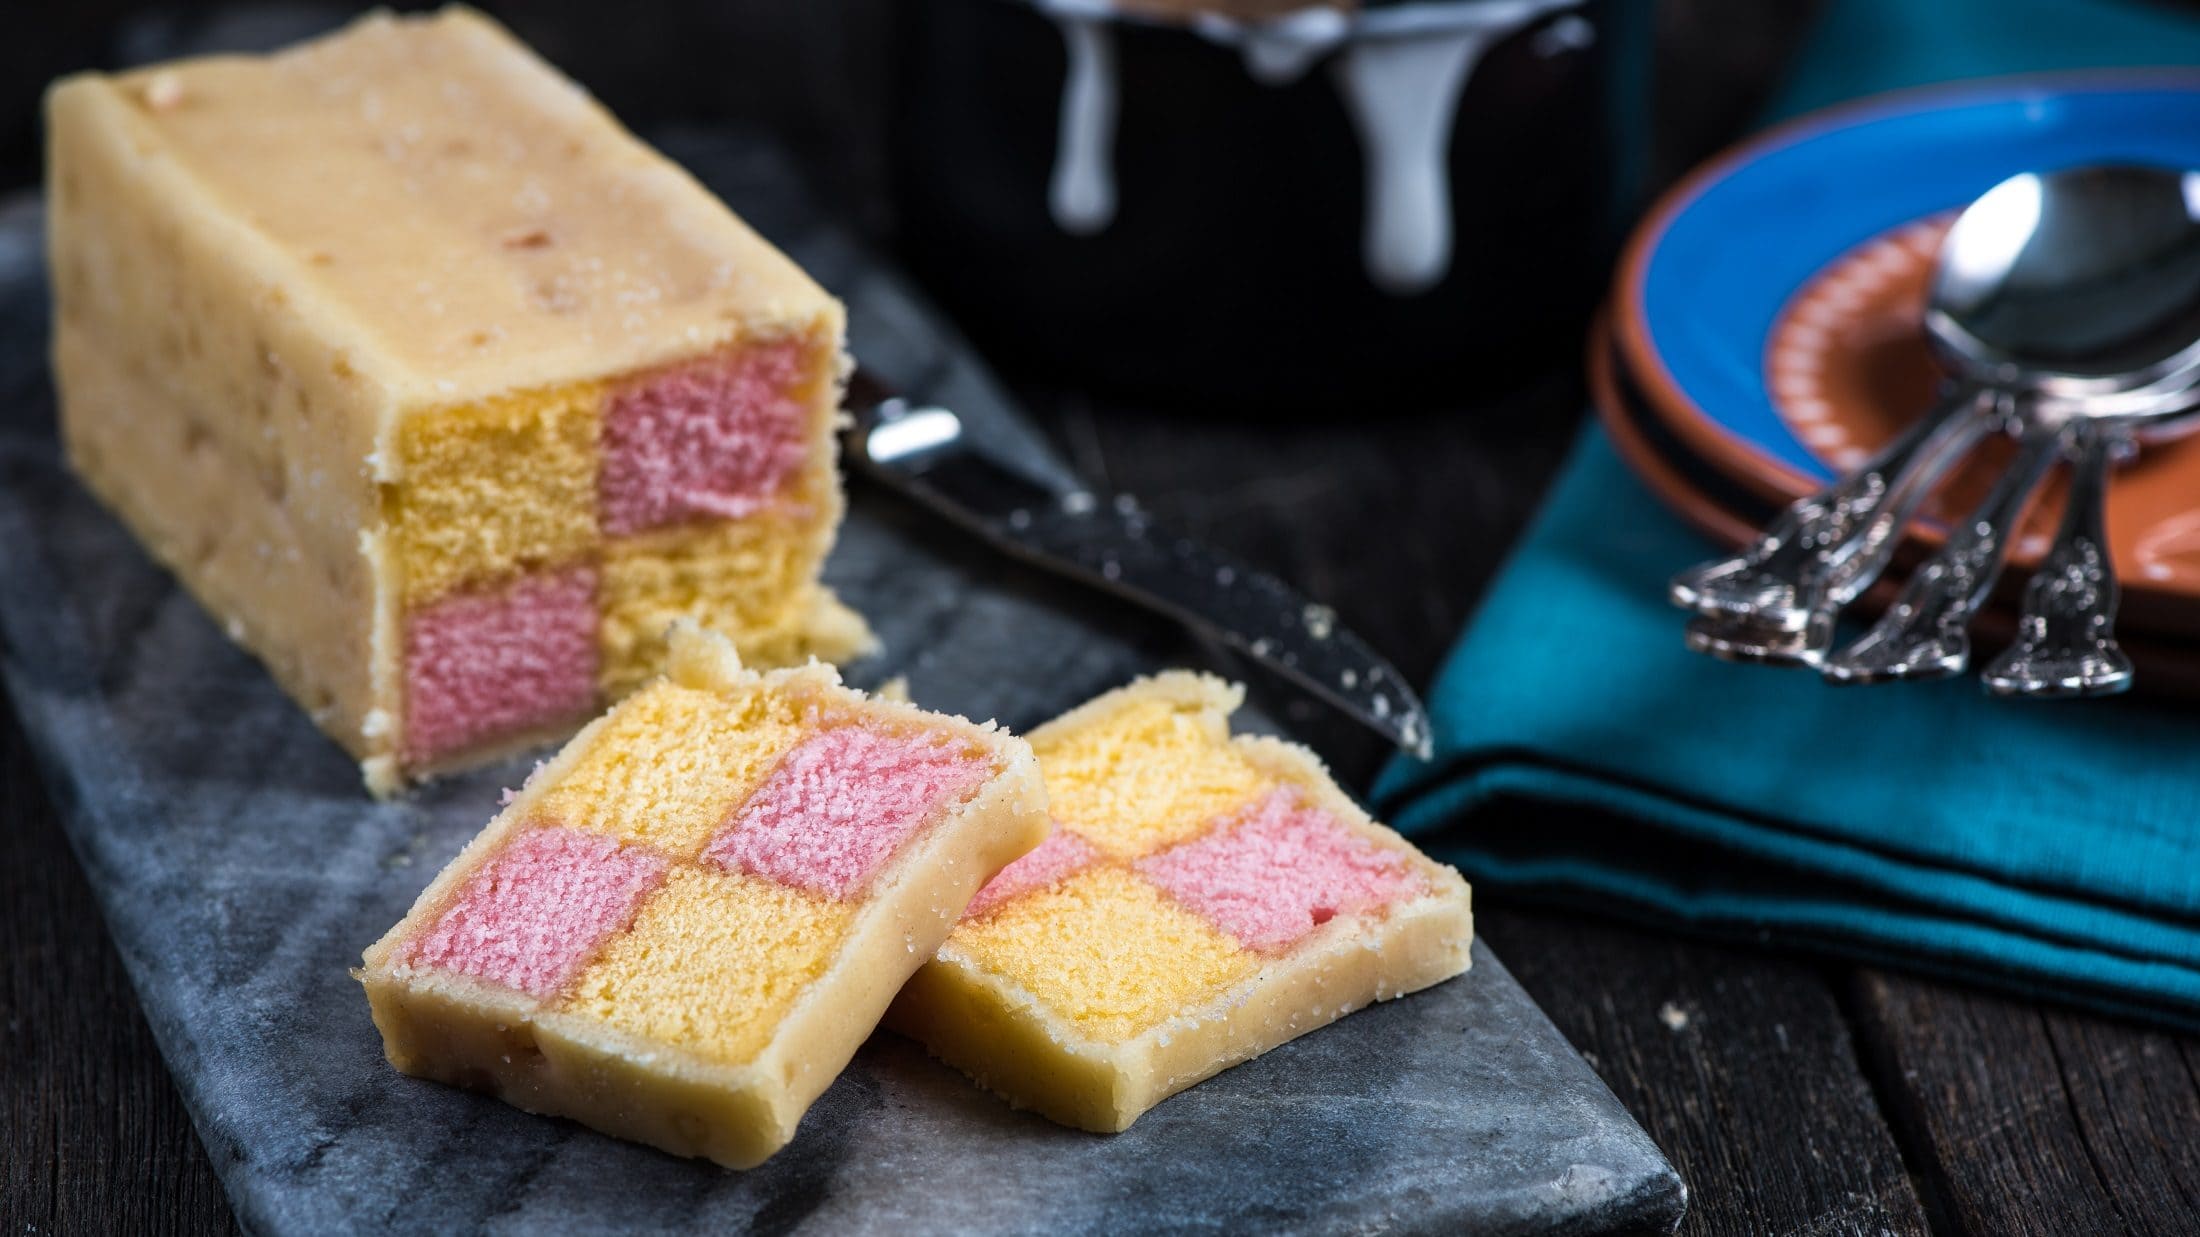 Draufsichtschräg: ein angeschnittener Battenberg Cake auf einem dunklen Brettchen auf dunklem Untergrund. Der Kuchen hat innen zwei verschiedene Farben, die Karo-Förmig angeordnet sind. Es handelt sich um die Farben gelb und rosa.